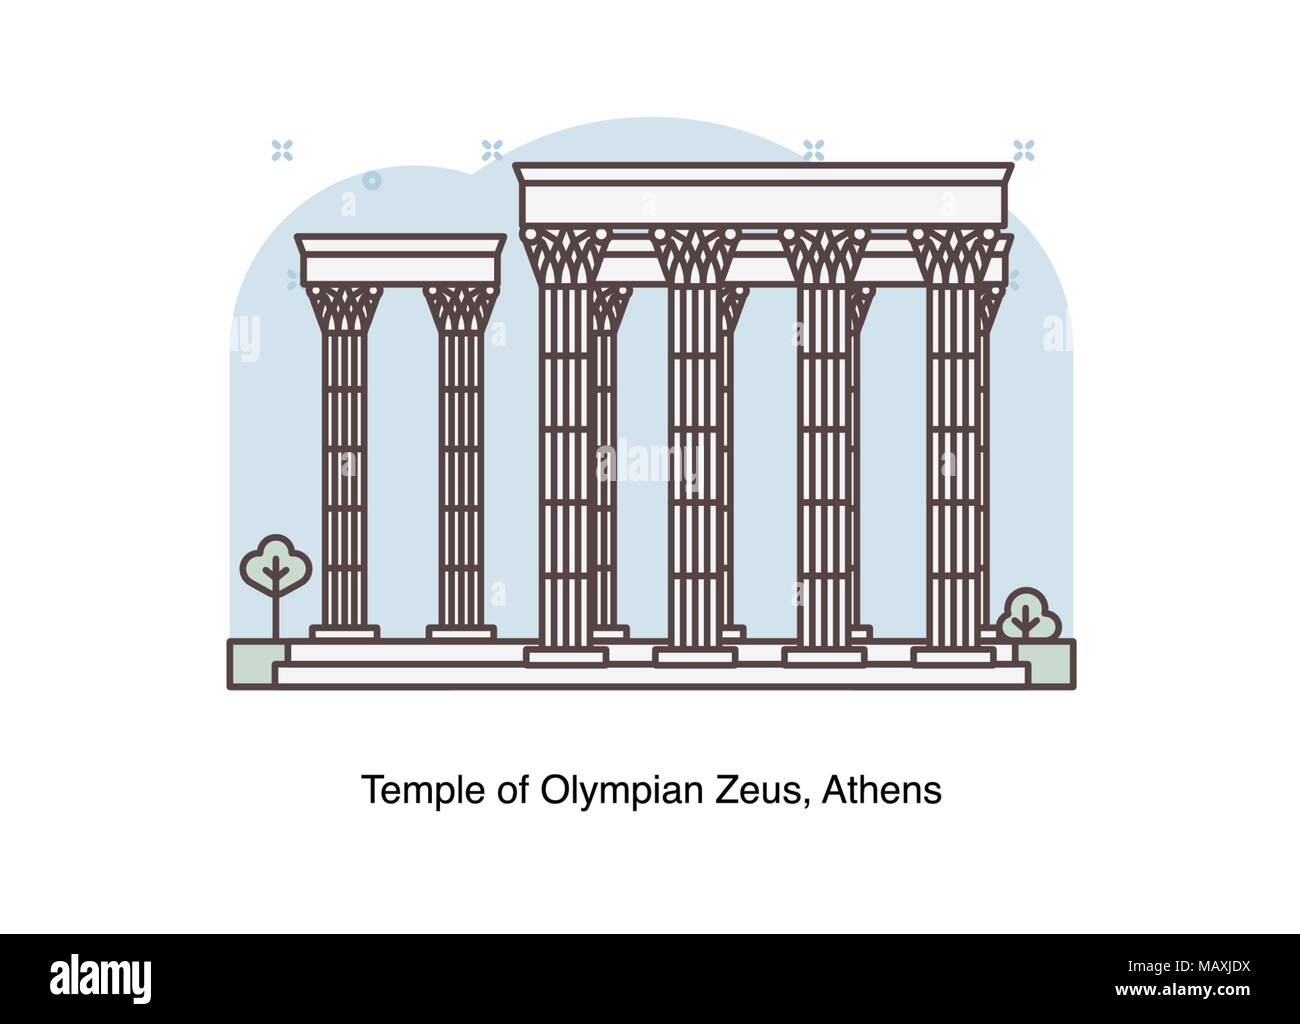 Ligne vectorielle illustration du Temple de Zeus Olympien, Athènes, Grèce. Illustration de Vecteur